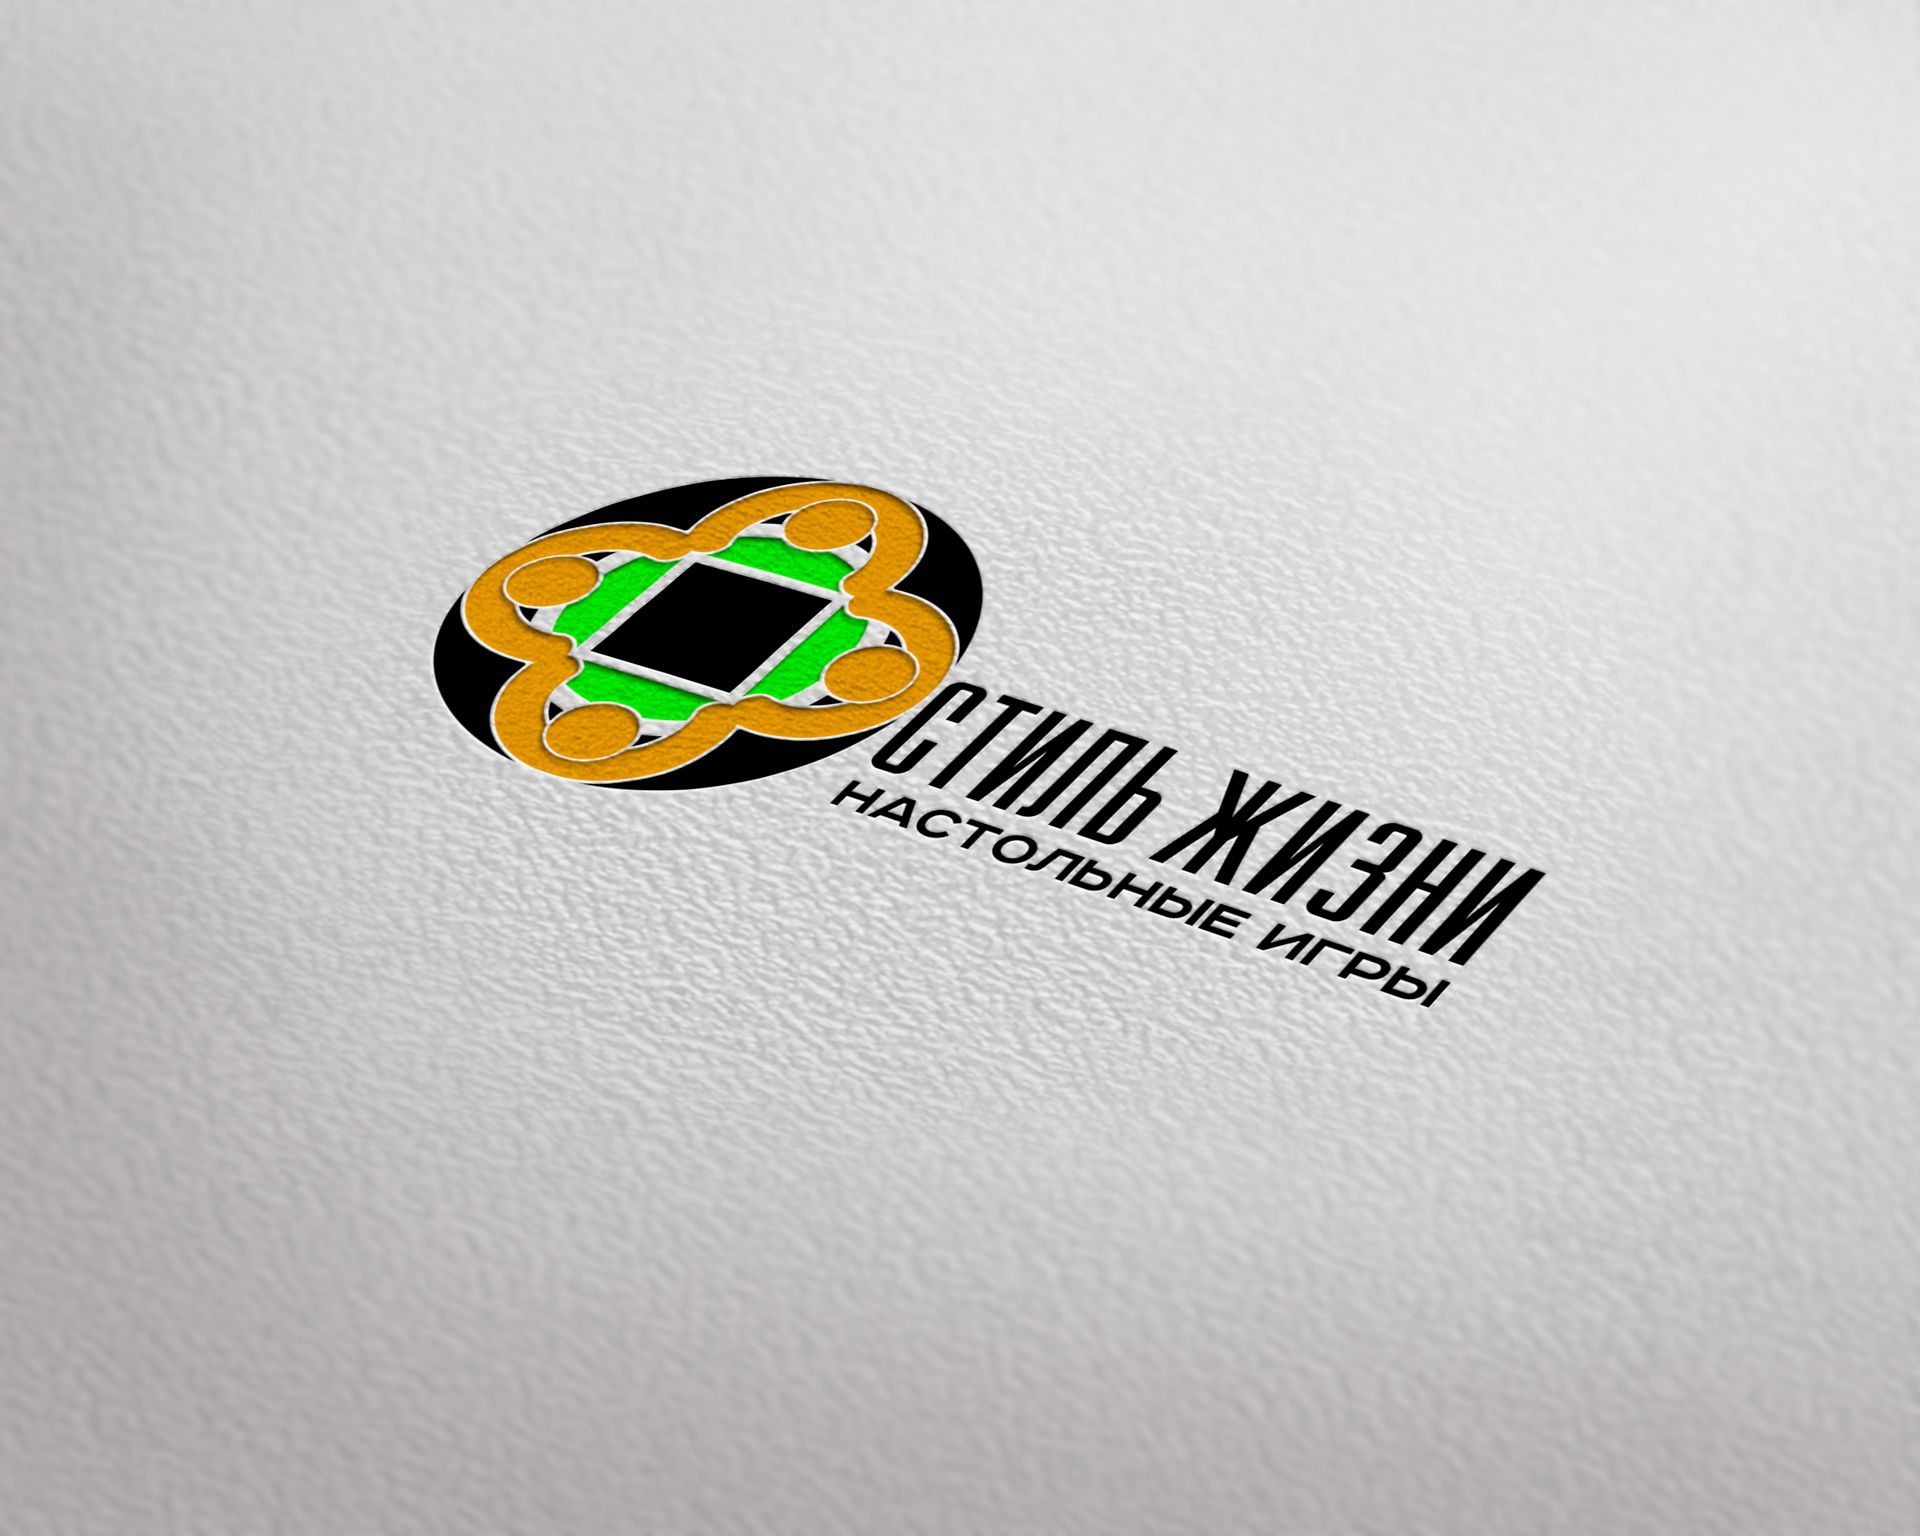 Логотип для компании Стиль Жизни - дизайнер Advokat72